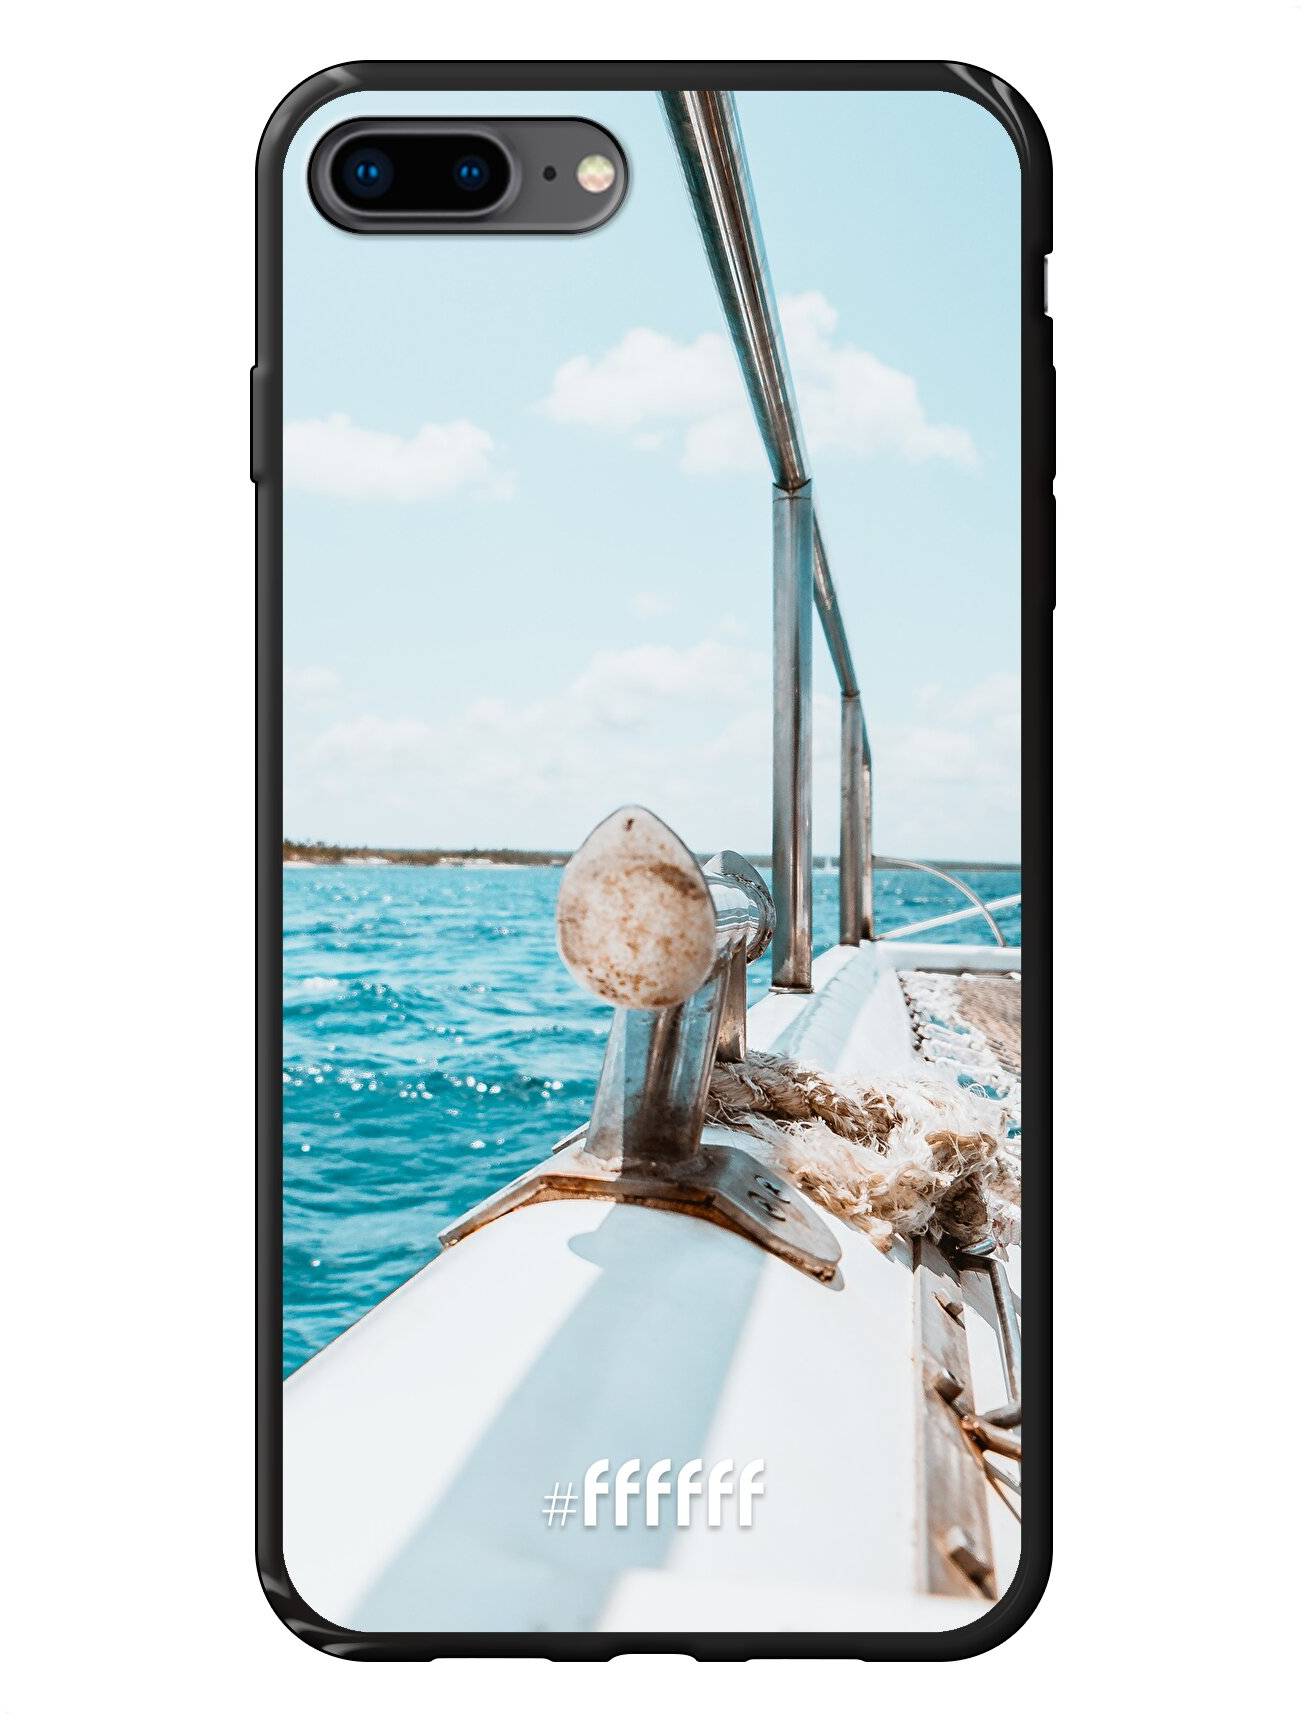 Sailing iPhone 8 Plus